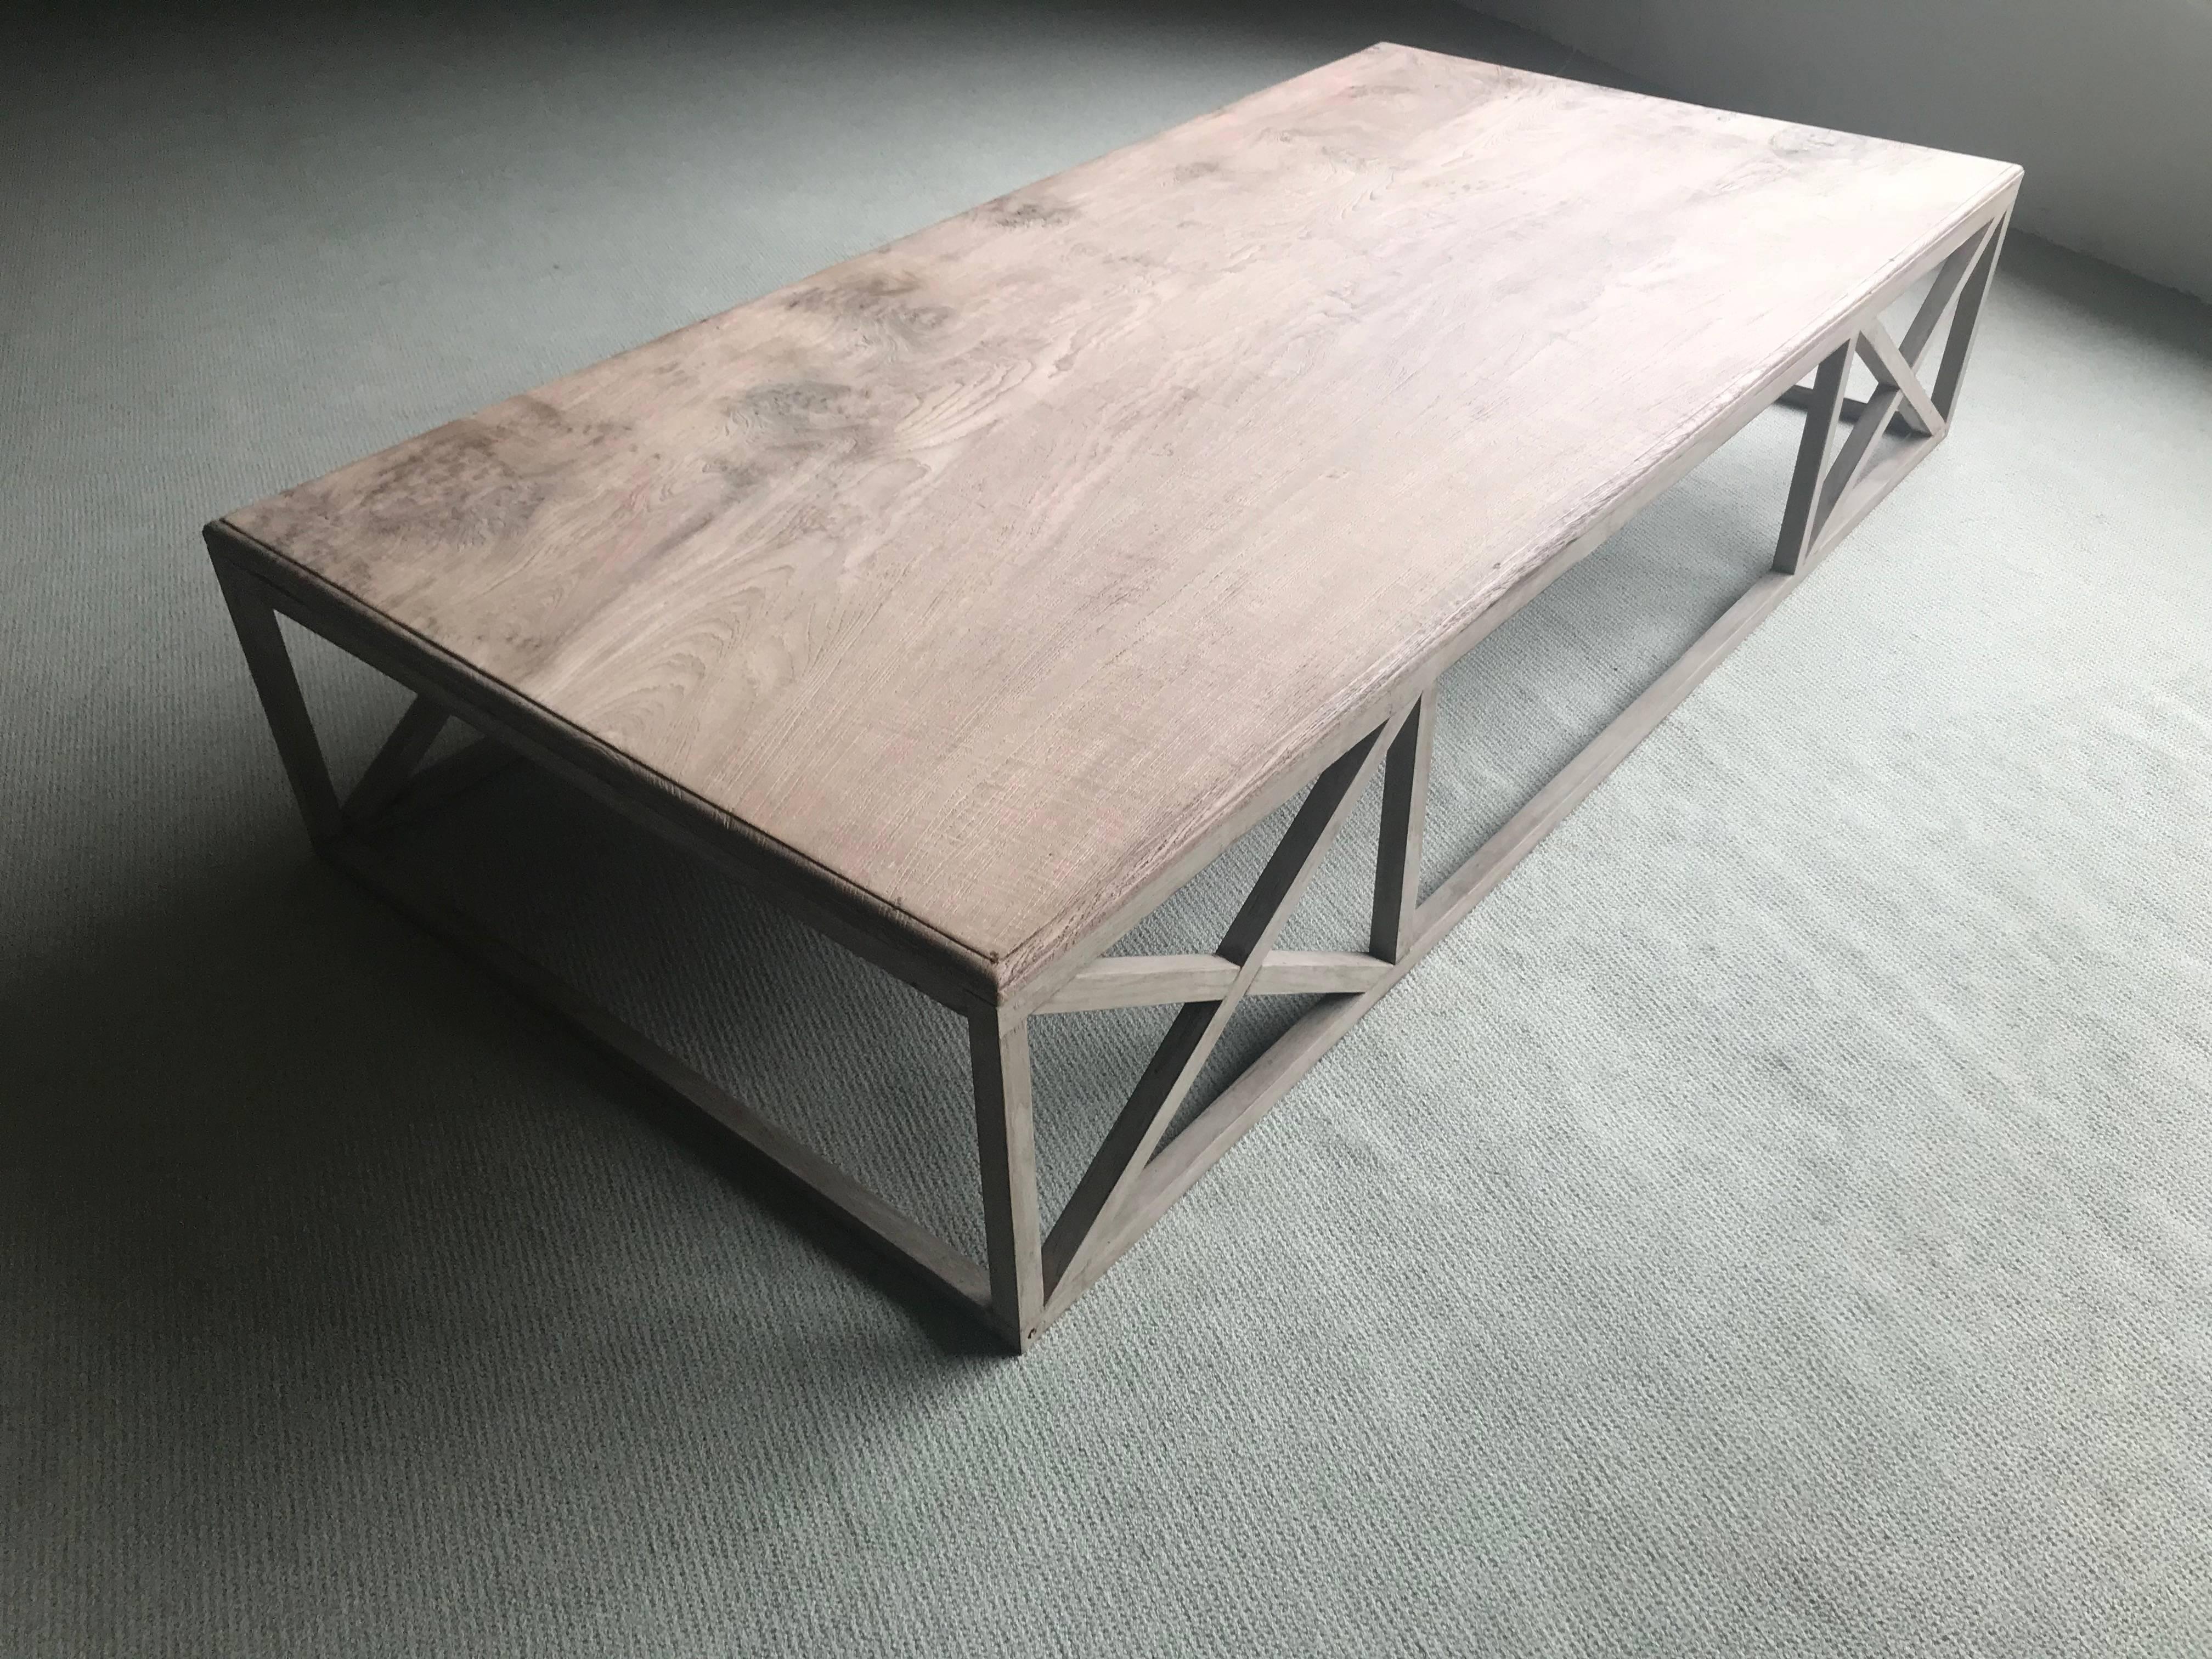 Exceptionnelle table basse en bois de teck blanchi, exceptionnelle pièce de bois d'un seul tenant utilisée comme plateau.